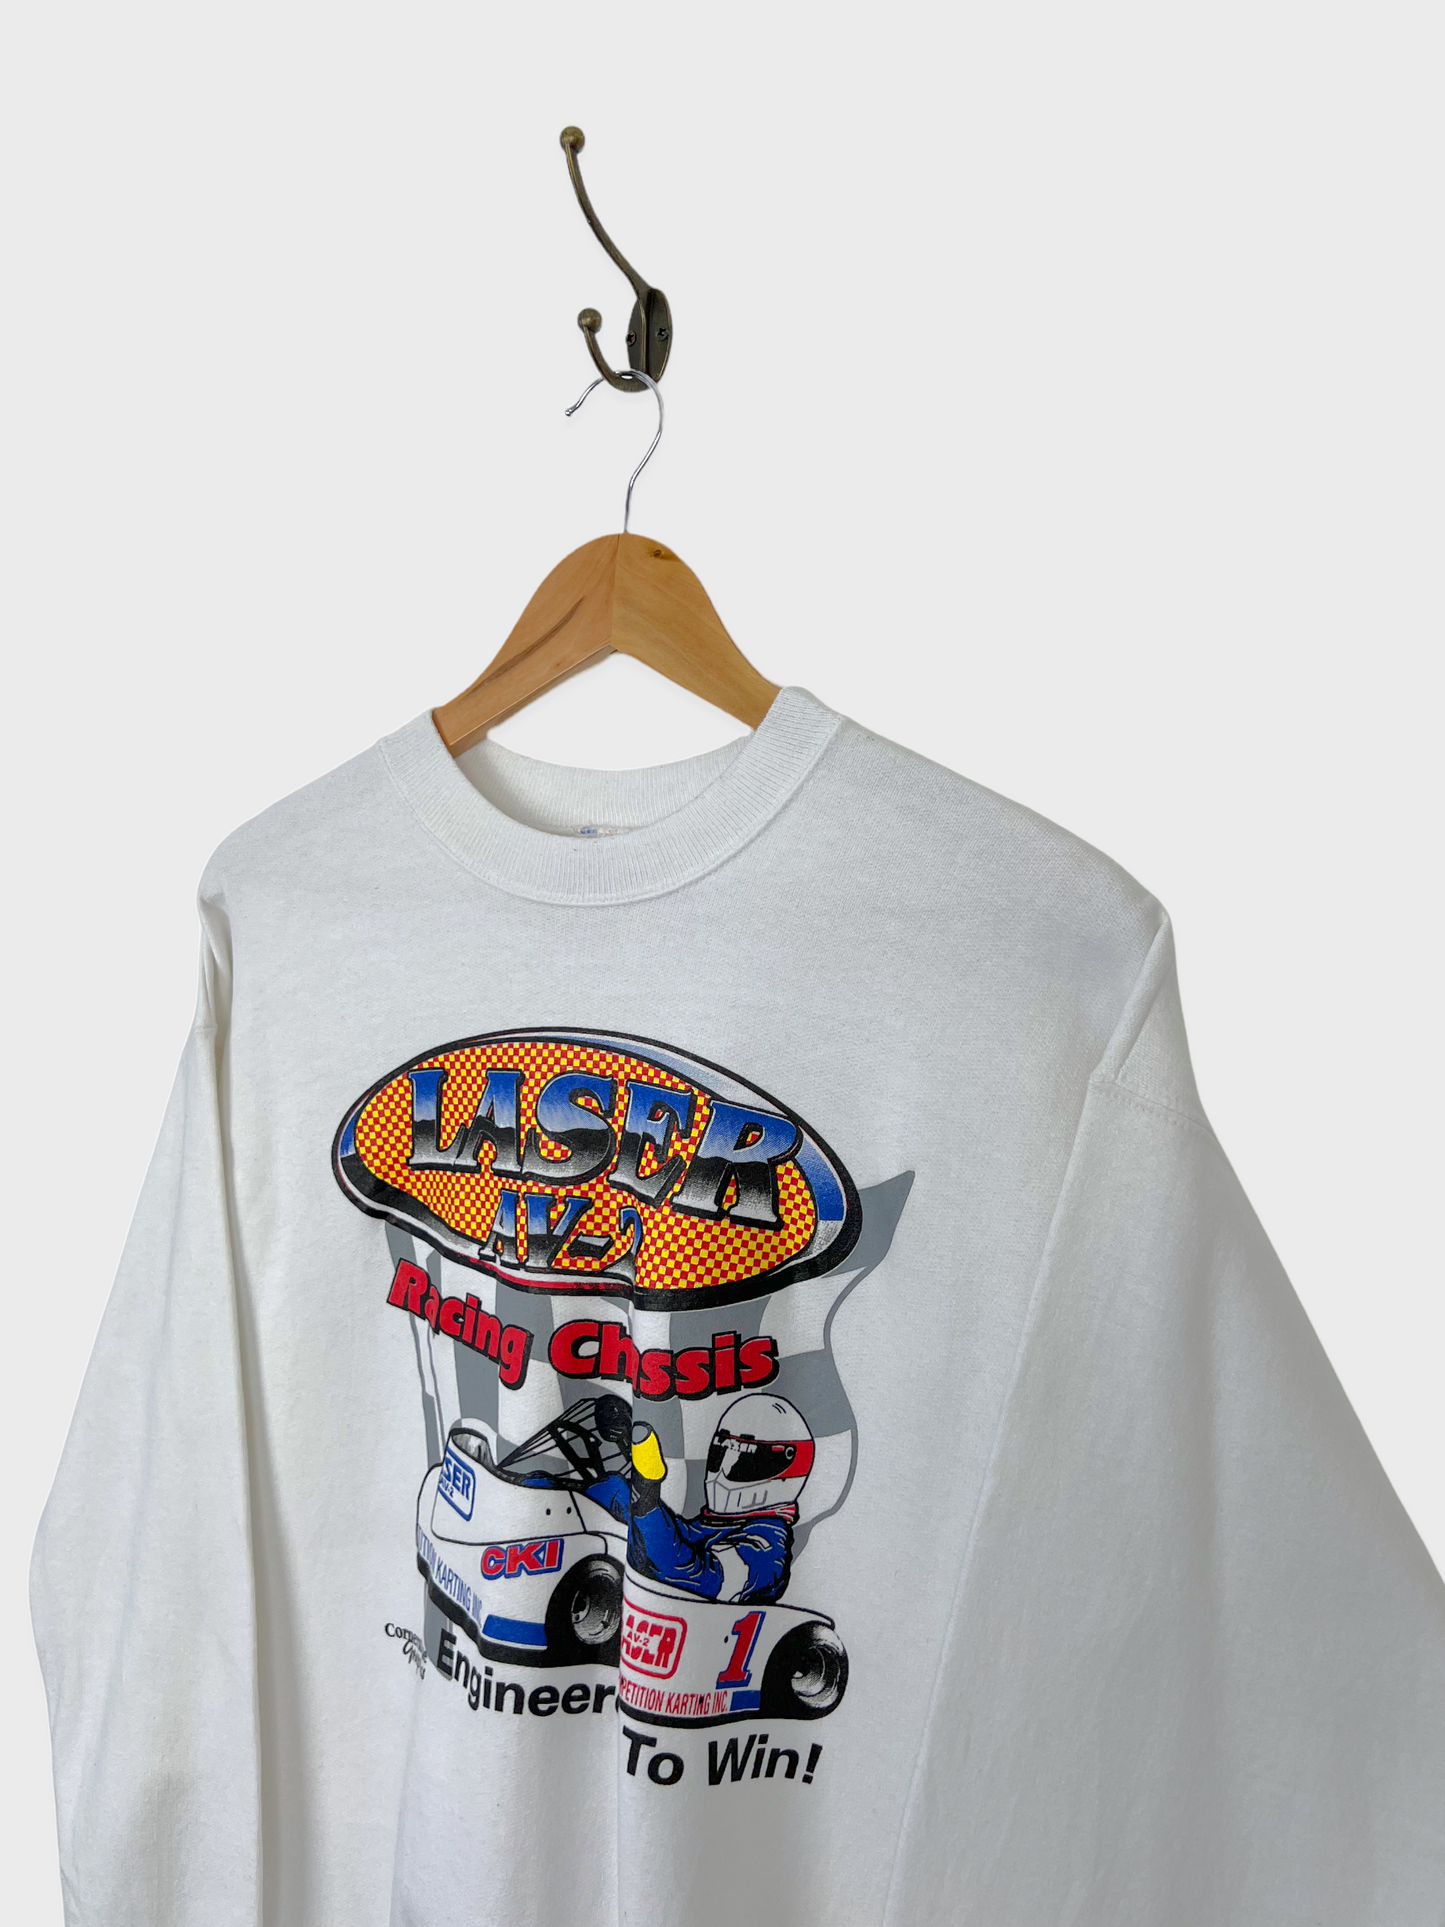 90's Laser AV-2 Racing Graphic Vintage Sweatshirt Size 8